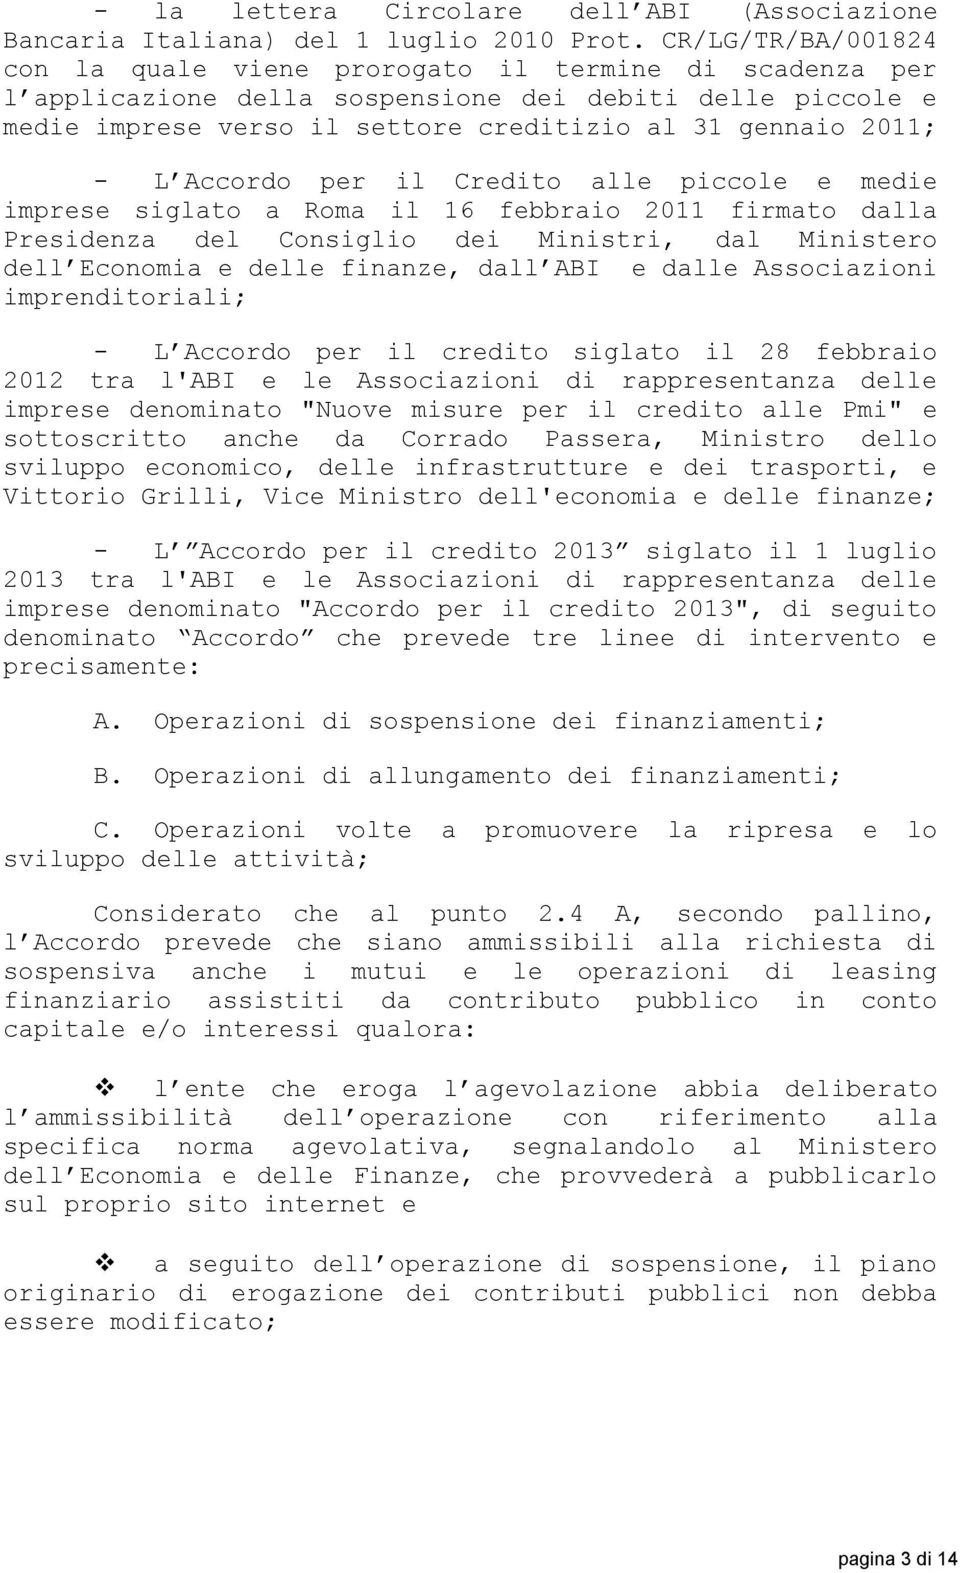 L Accordo per il Credito alle piccole e medie imprese siglato a Roma il 16 febbraio 2011 firmato dalla Presidenza del Consiglio dei Ministri, dal Ministero dell Economia e delle finanze, dall ABI e